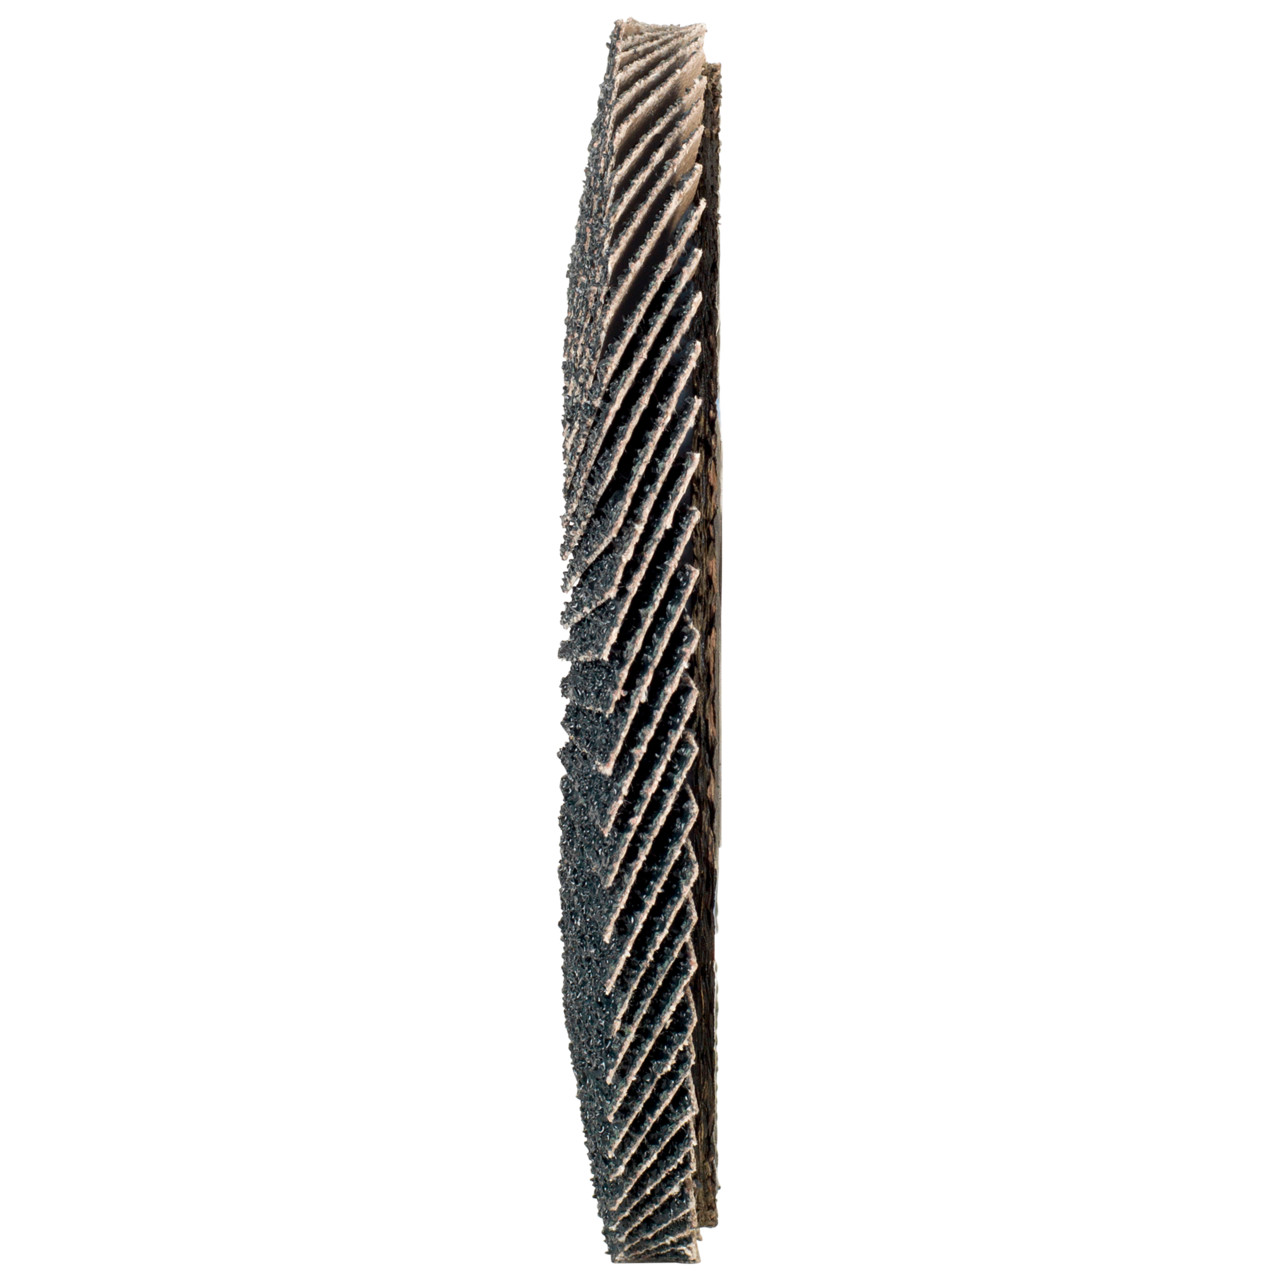 TYROLIT Fächerscheibe DxH 125x22,2 2in1 für Stahl & Edelstahl, P80, Form: 27A - gekröpfte Ausführung (Glasfaserträgerkörperausführung), Art. 668665